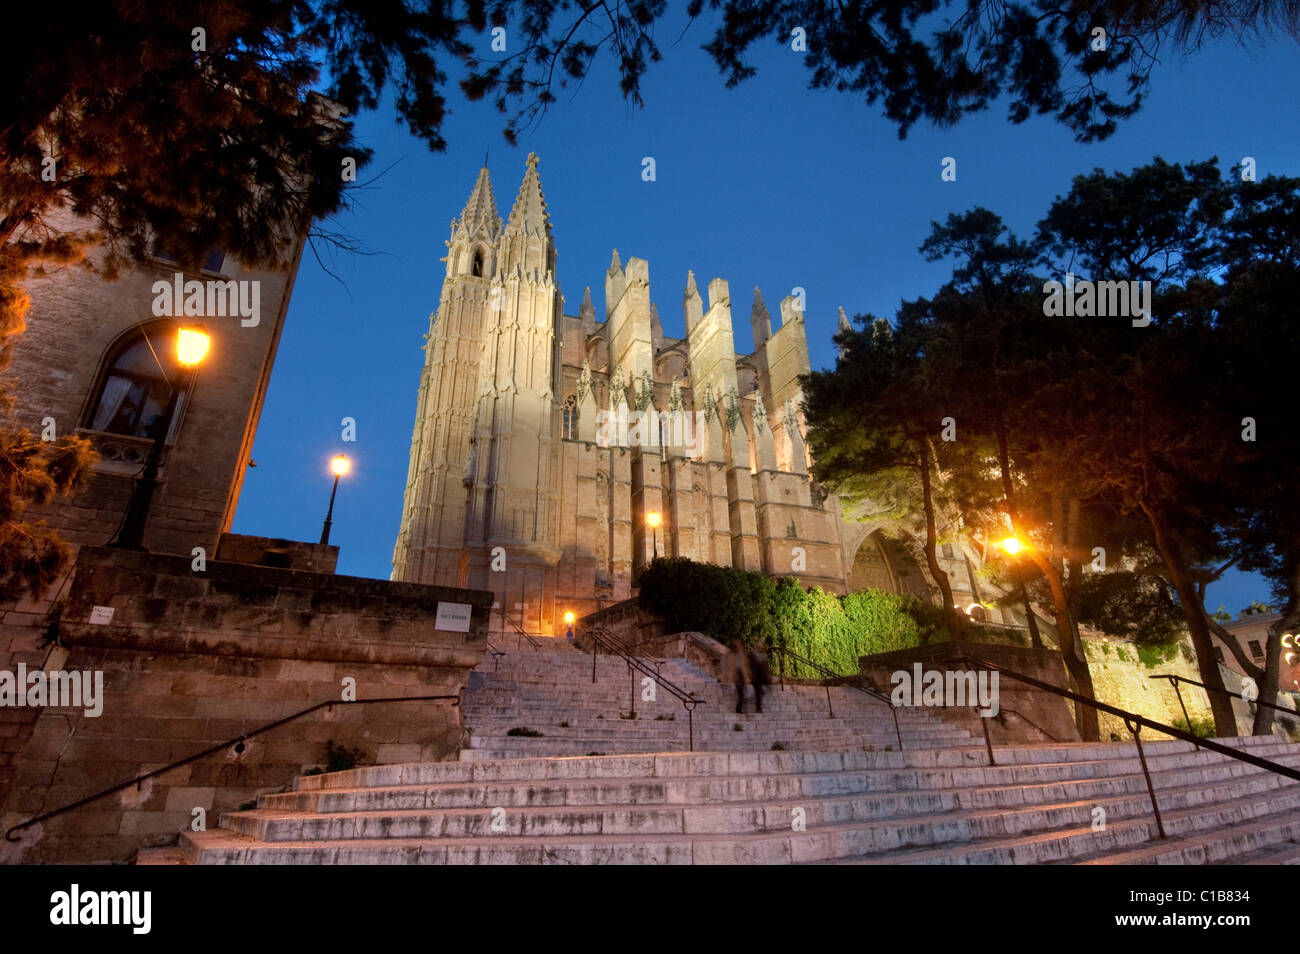 ES - MALLORCA : La Seu Cathedral à Palma de Majorque, Espagne Banque D'Images